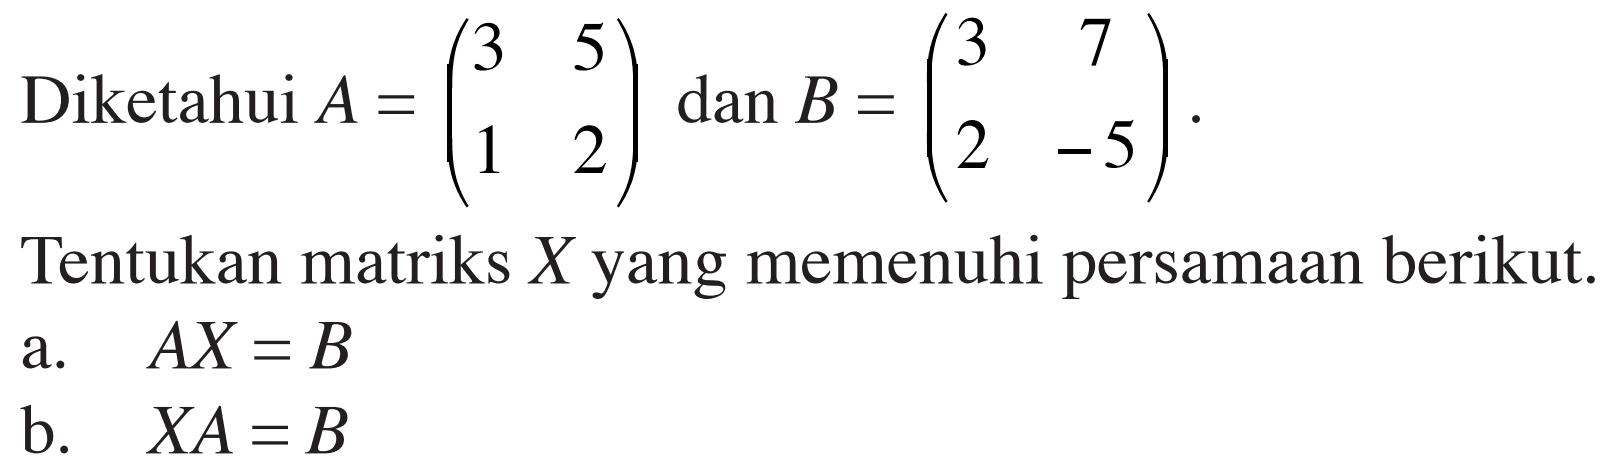 Diketahui A=(3 5 1 2) dan B = (3 7 2 -5). Tentukan matriks X yang memenuhi persamaan berikut. a. AX=B b. XA=B